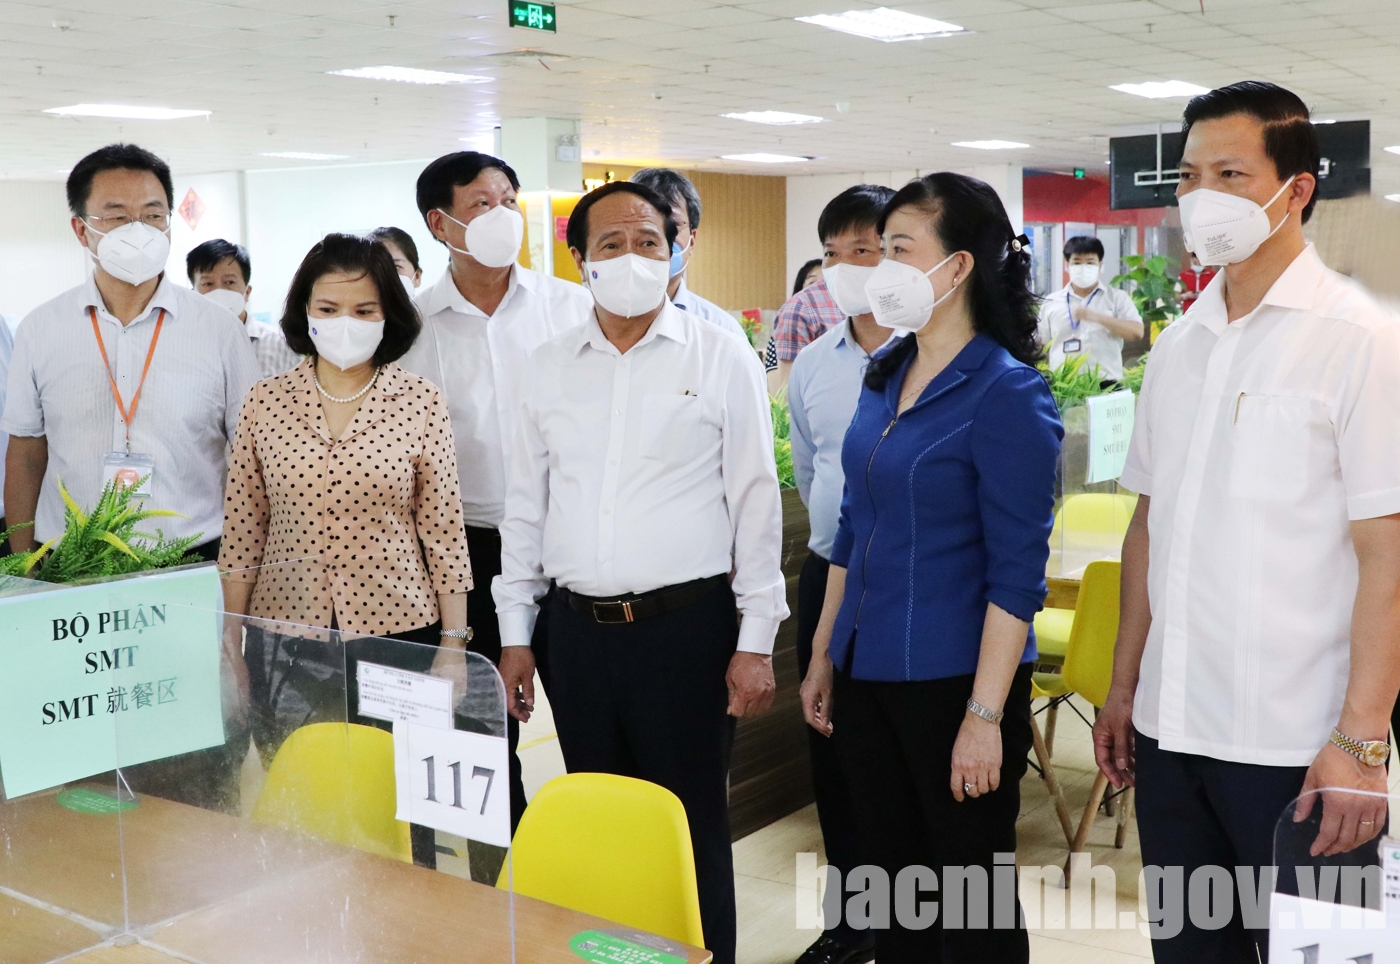 Phó Thủ tướng Chính phủ Lê Văn Thành (thứ ba từ phải sang) cùng lãnh đạo tỉnh kiểm tra khu vực bếp ăn tại Công ty TNHH Goerteck Vina.